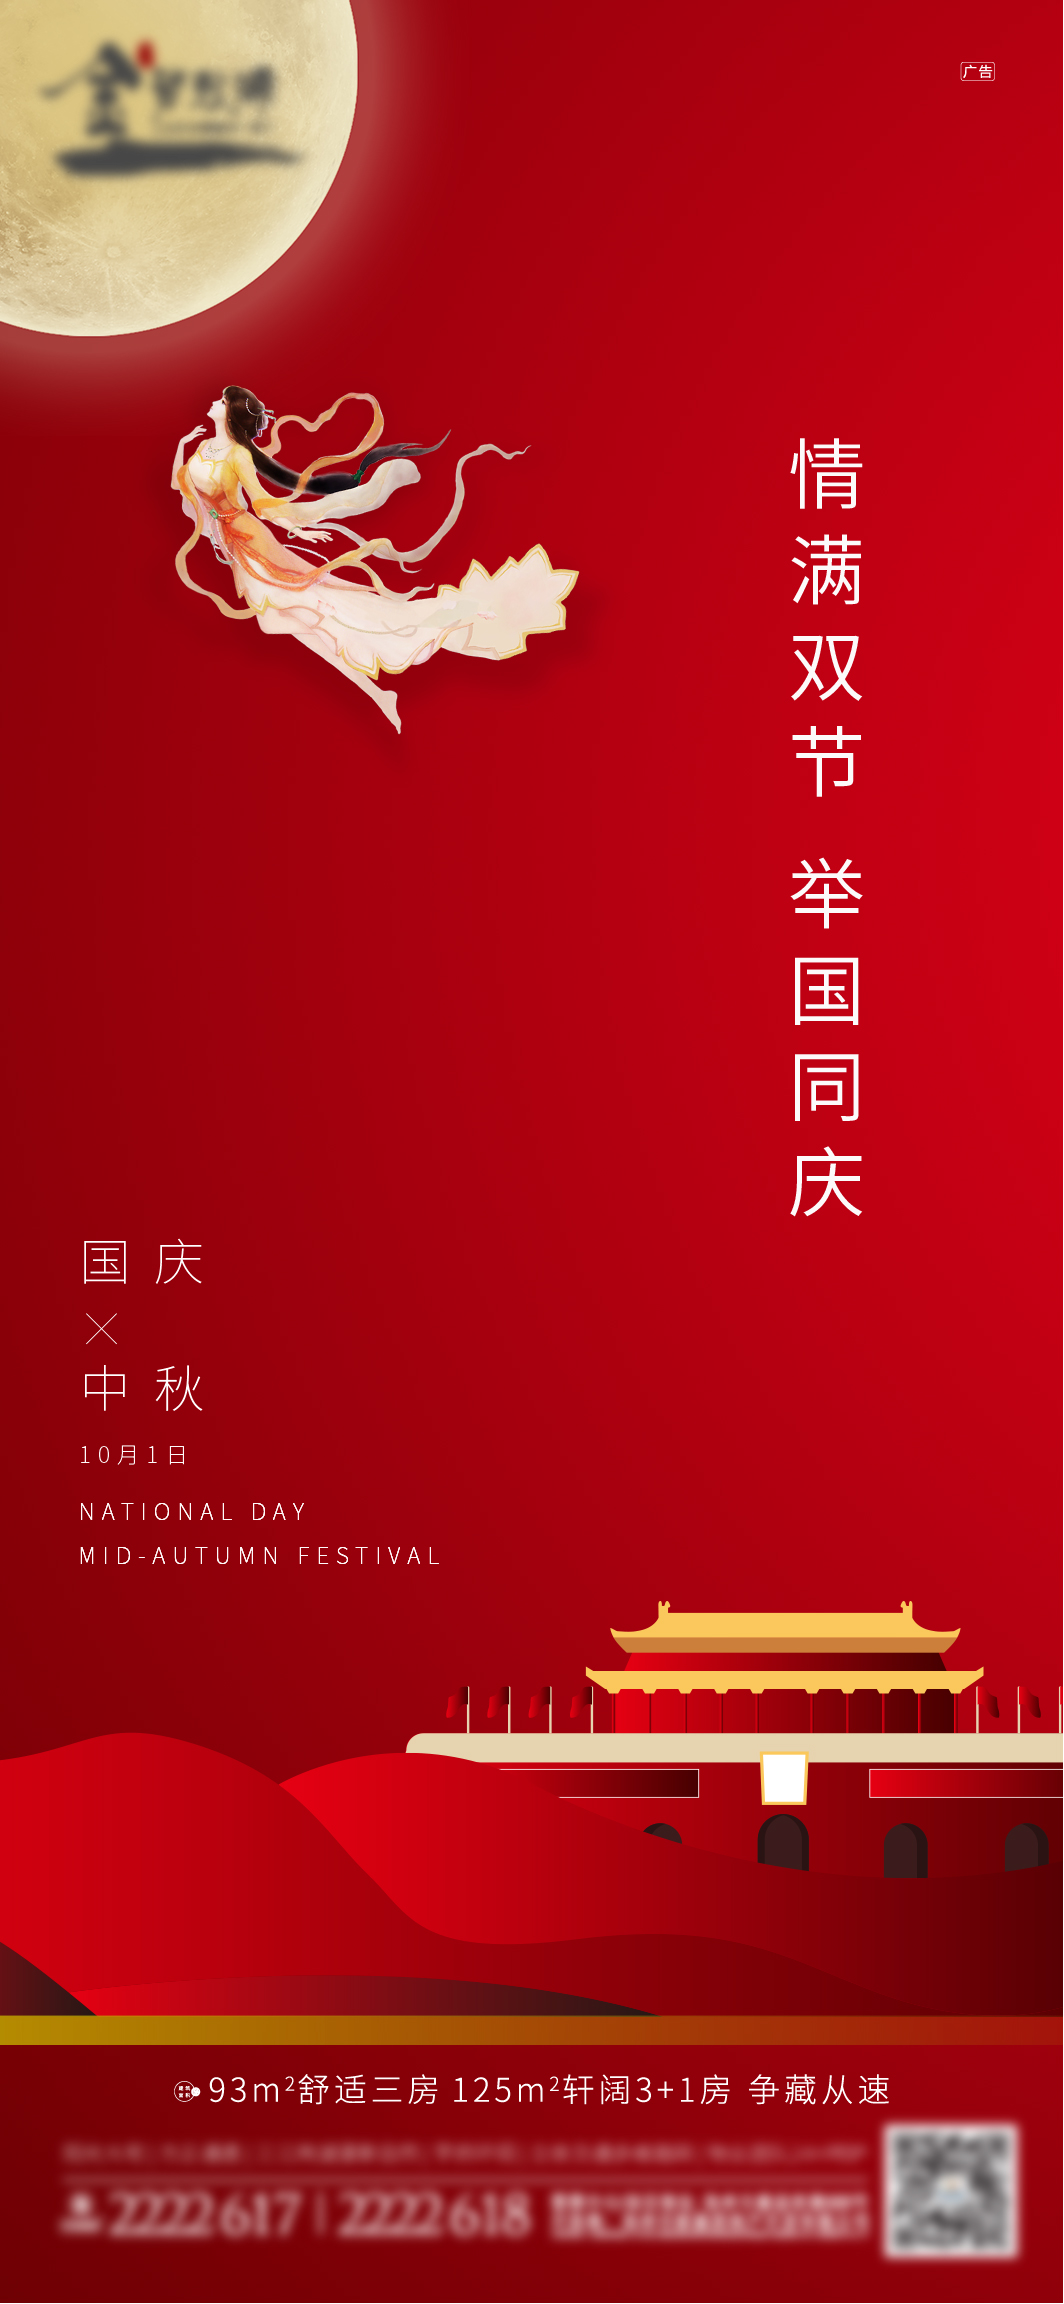 国庆中秋刷屏ai广告设计素材海报模板免费下载